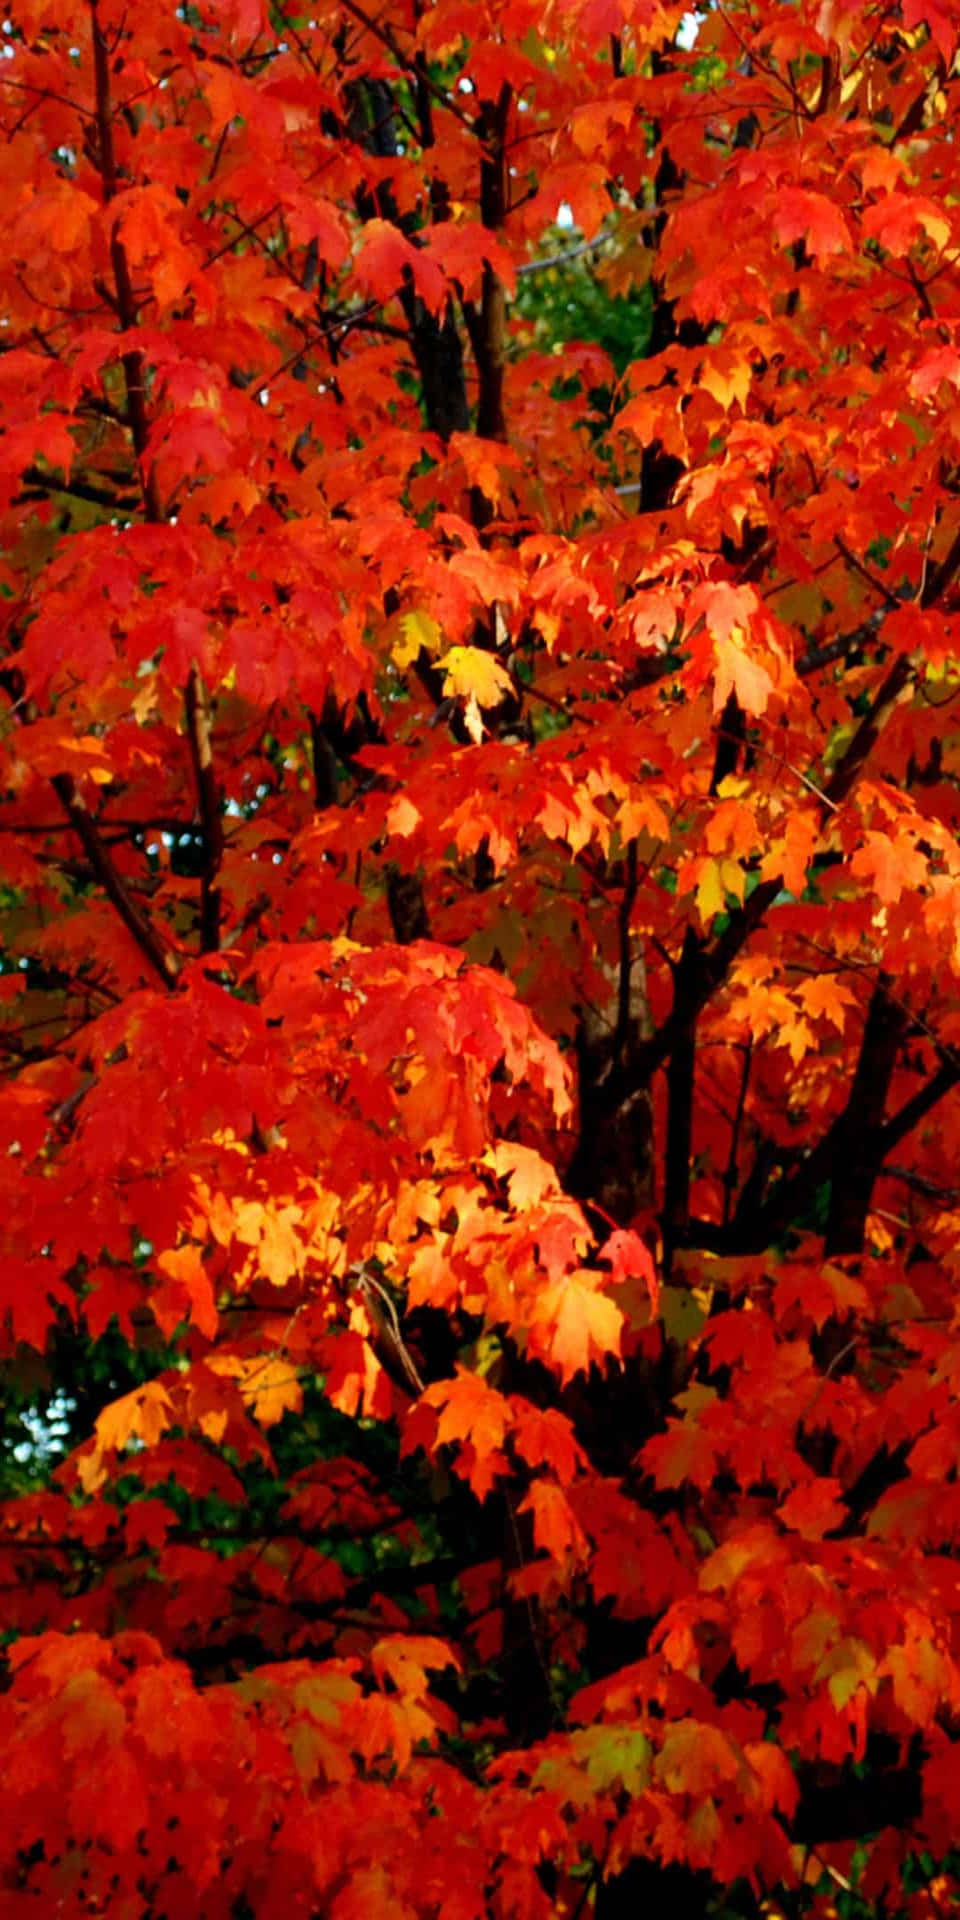 Pixel3 Folhas Laranjas De Outono Em Um Fundo De Árvore De Bordo.